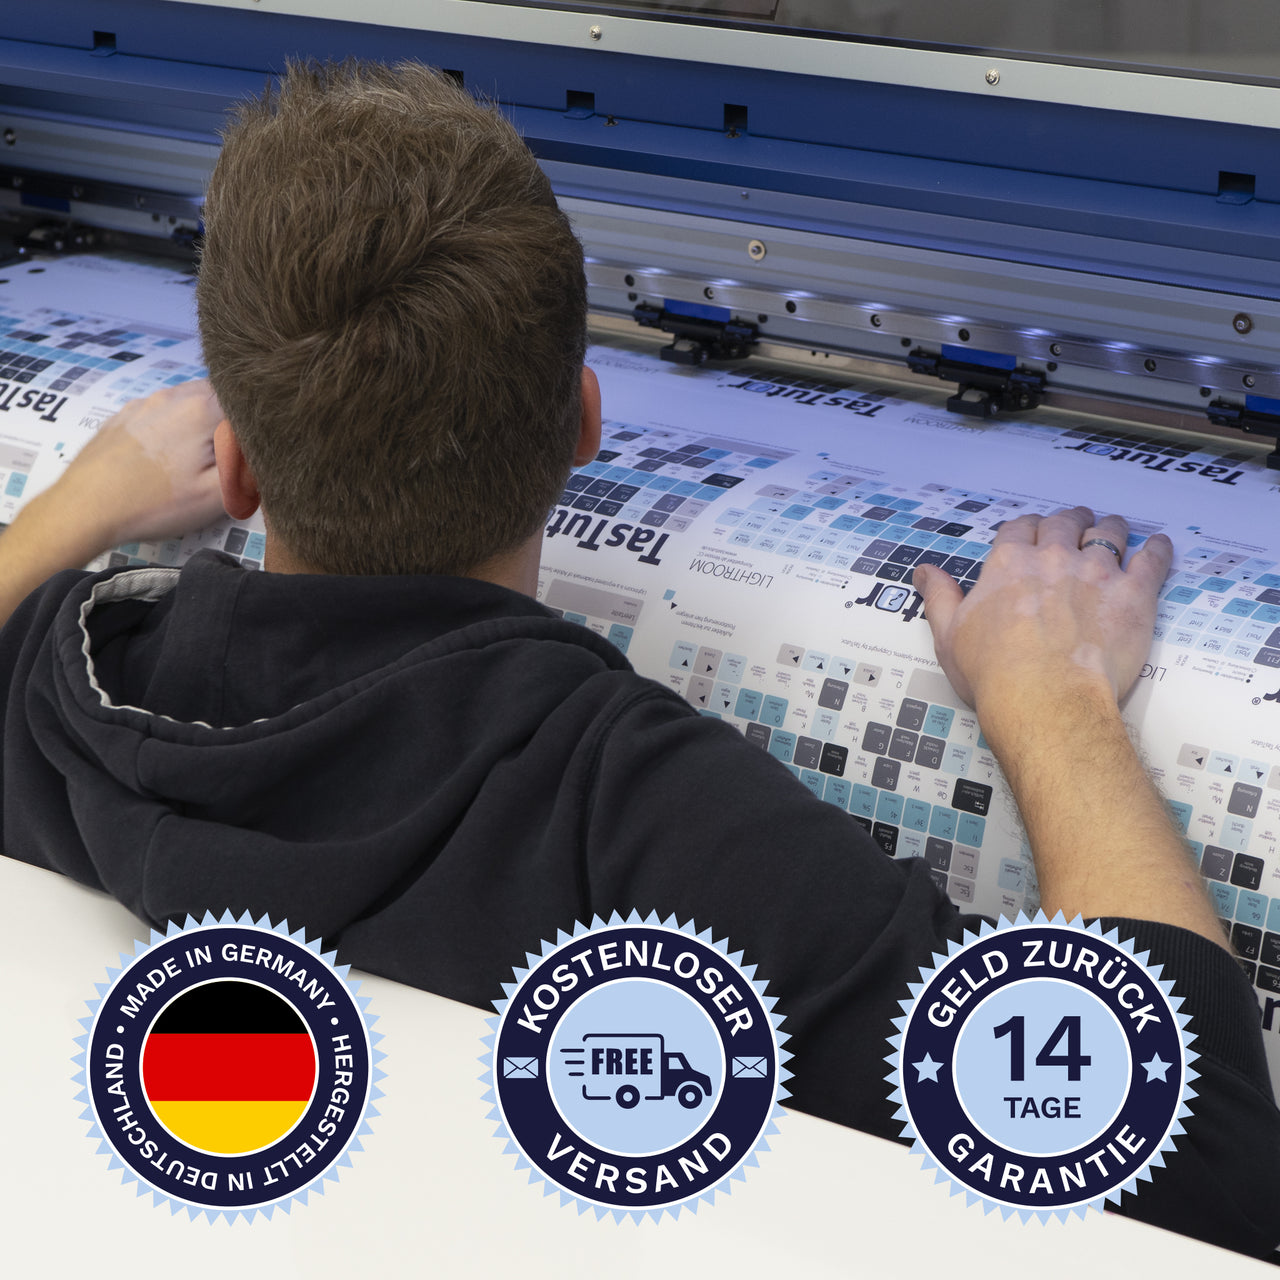 Reason Tastaturaufkleber werden in Deutschland hergestellt. Der Versand ist kostenlos und wir gewährleisten 14 Tage Geld zurück Garantie.